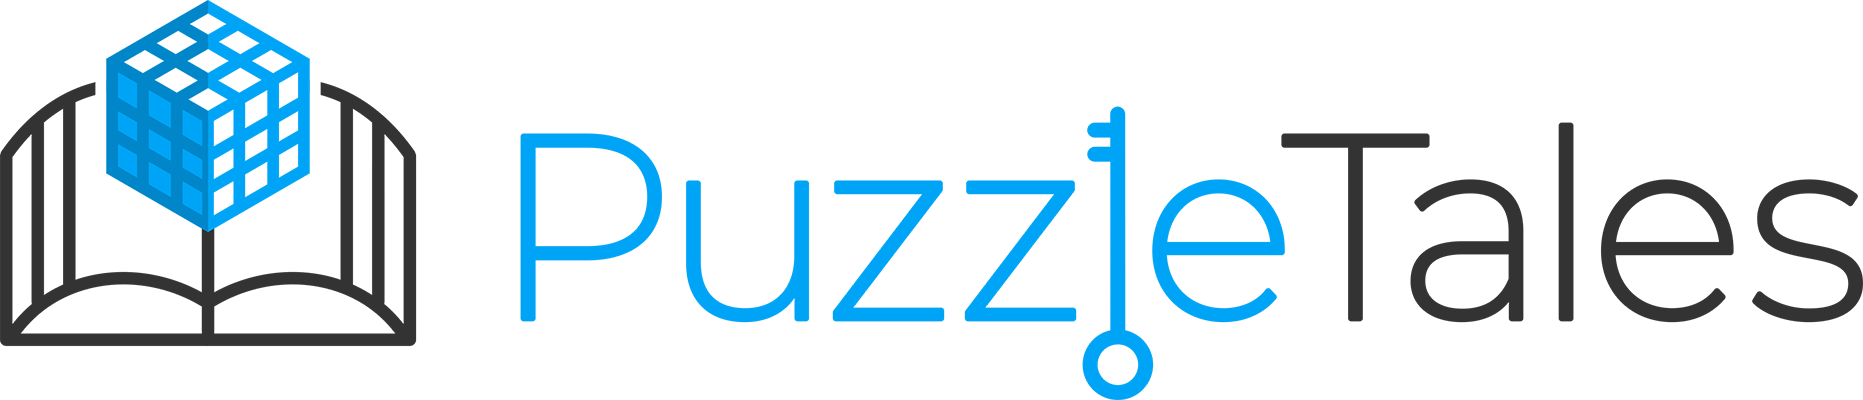 PuzzleTales Logo